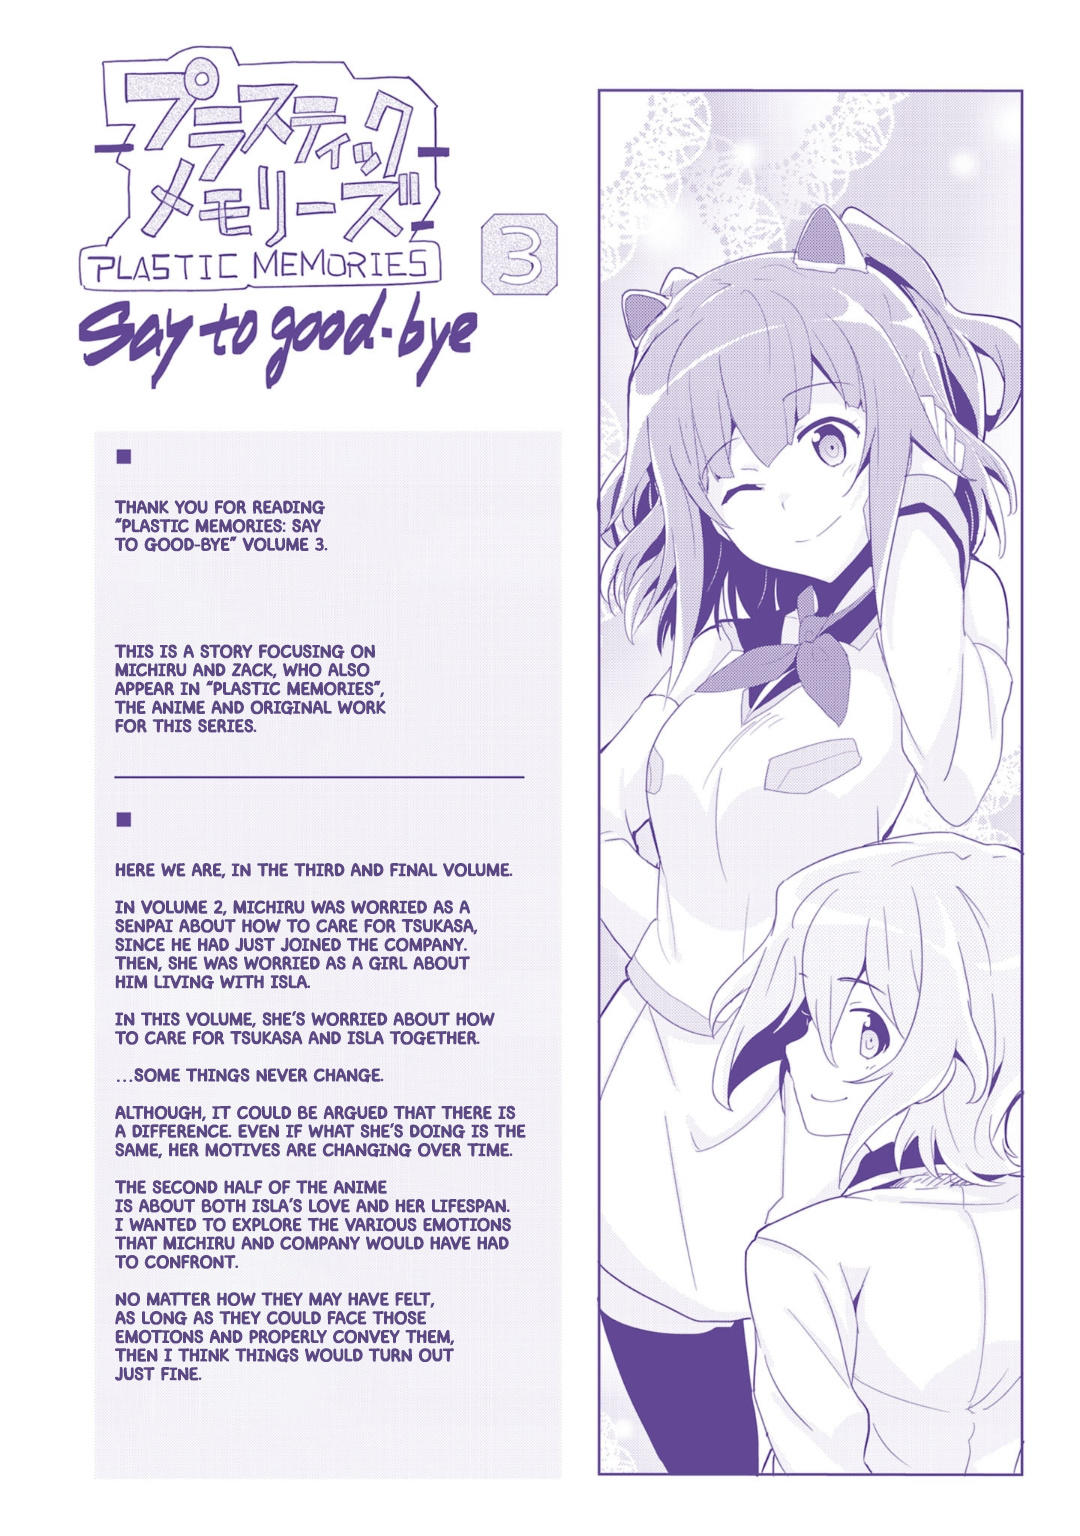 Plastic Memories - Say to Good-bye Chapter 14, Plastic Memories - Say to  Good-bye Chapter 14 Page 1 - Read Free Manga Online at Ten Manga